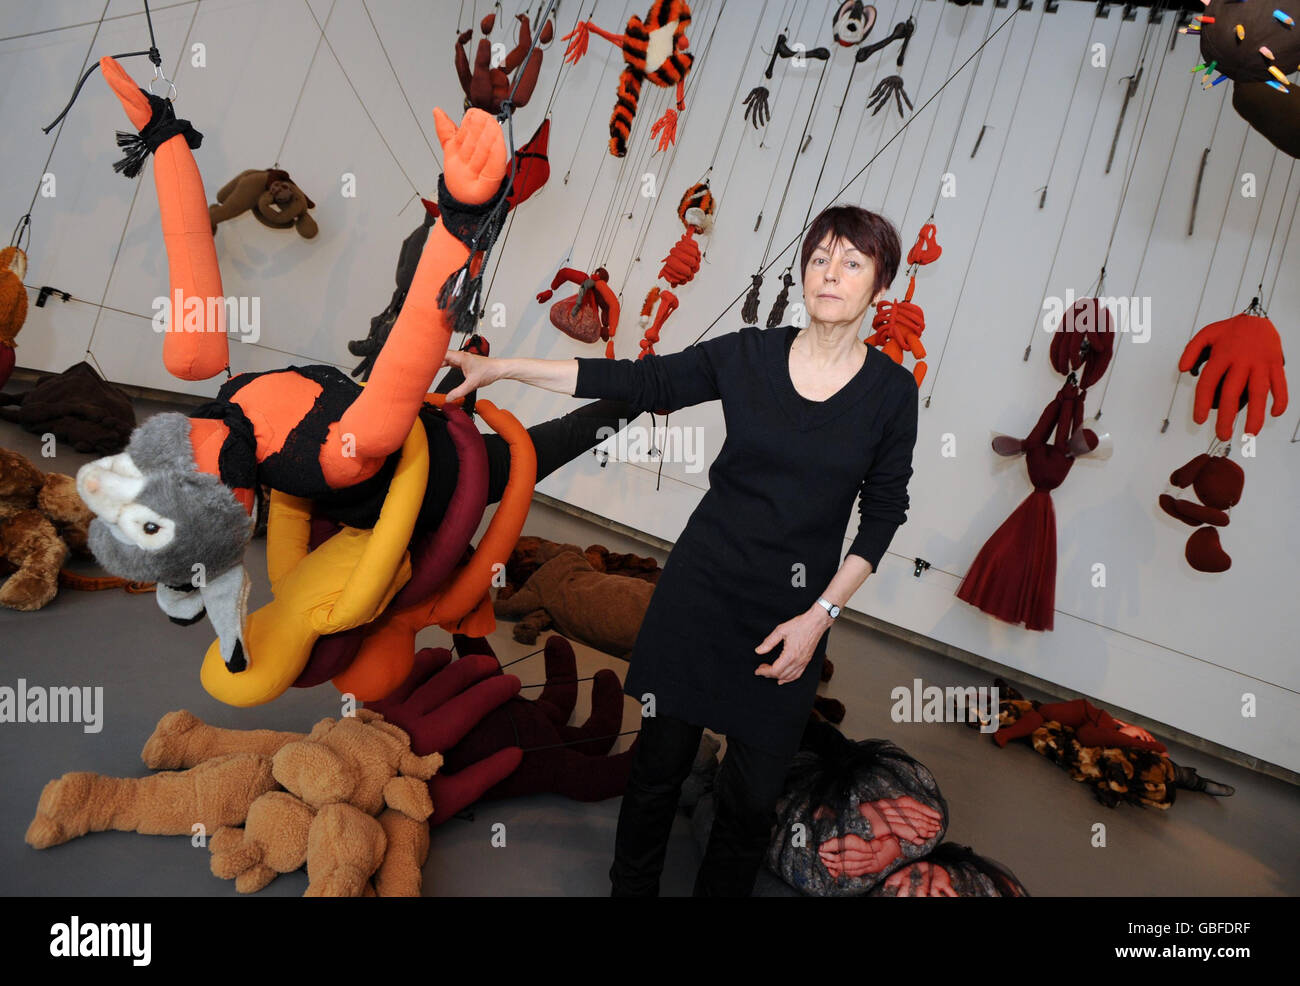 Die französische Künstlerin Annette Messager mit einer ihrer fantastischen Installationen artikuliert-disartikuliert 2001-2002. Am 4. März wird die Ausstellung "Messengers" in der Hayward Gallery in London eröffnet. Stockfoto